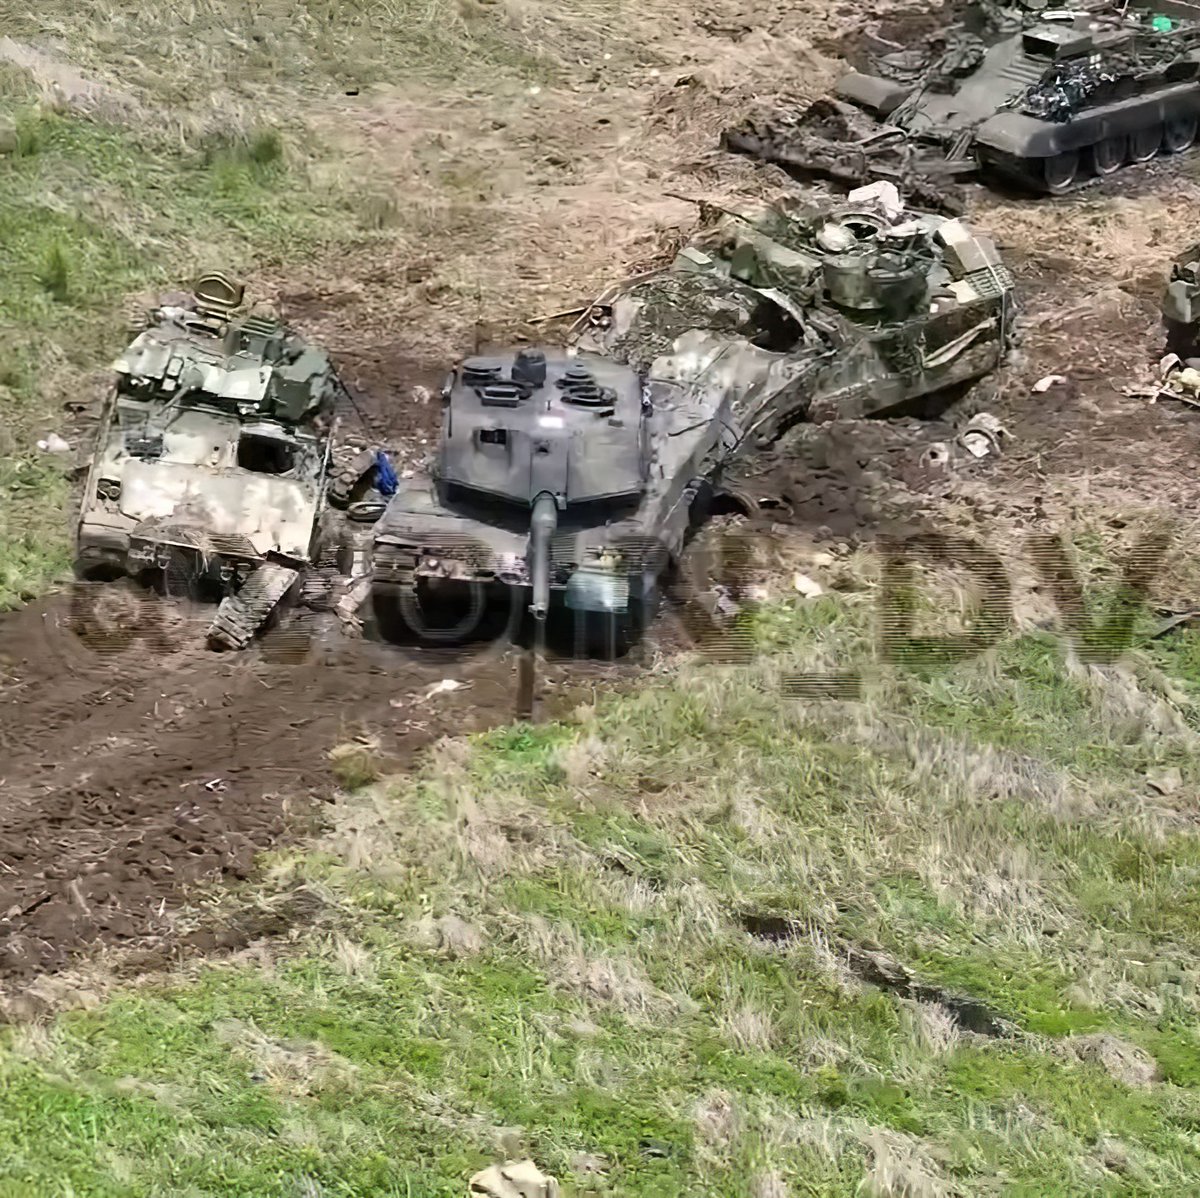 Hayo pendukung Ukraina, jangan denial, nyatanya di foto ini kita bisa lihat beberapa IFV M2A2 Bradley (buatan AS), MBT Leopard 2A6 (buatan Jerman), dan BREM 1 Recovery Vehicle (buatan Soviet), semuanya milik Ukraina, yang hancur-rusak karena serangan artileri/ladang ranjau Rusia.